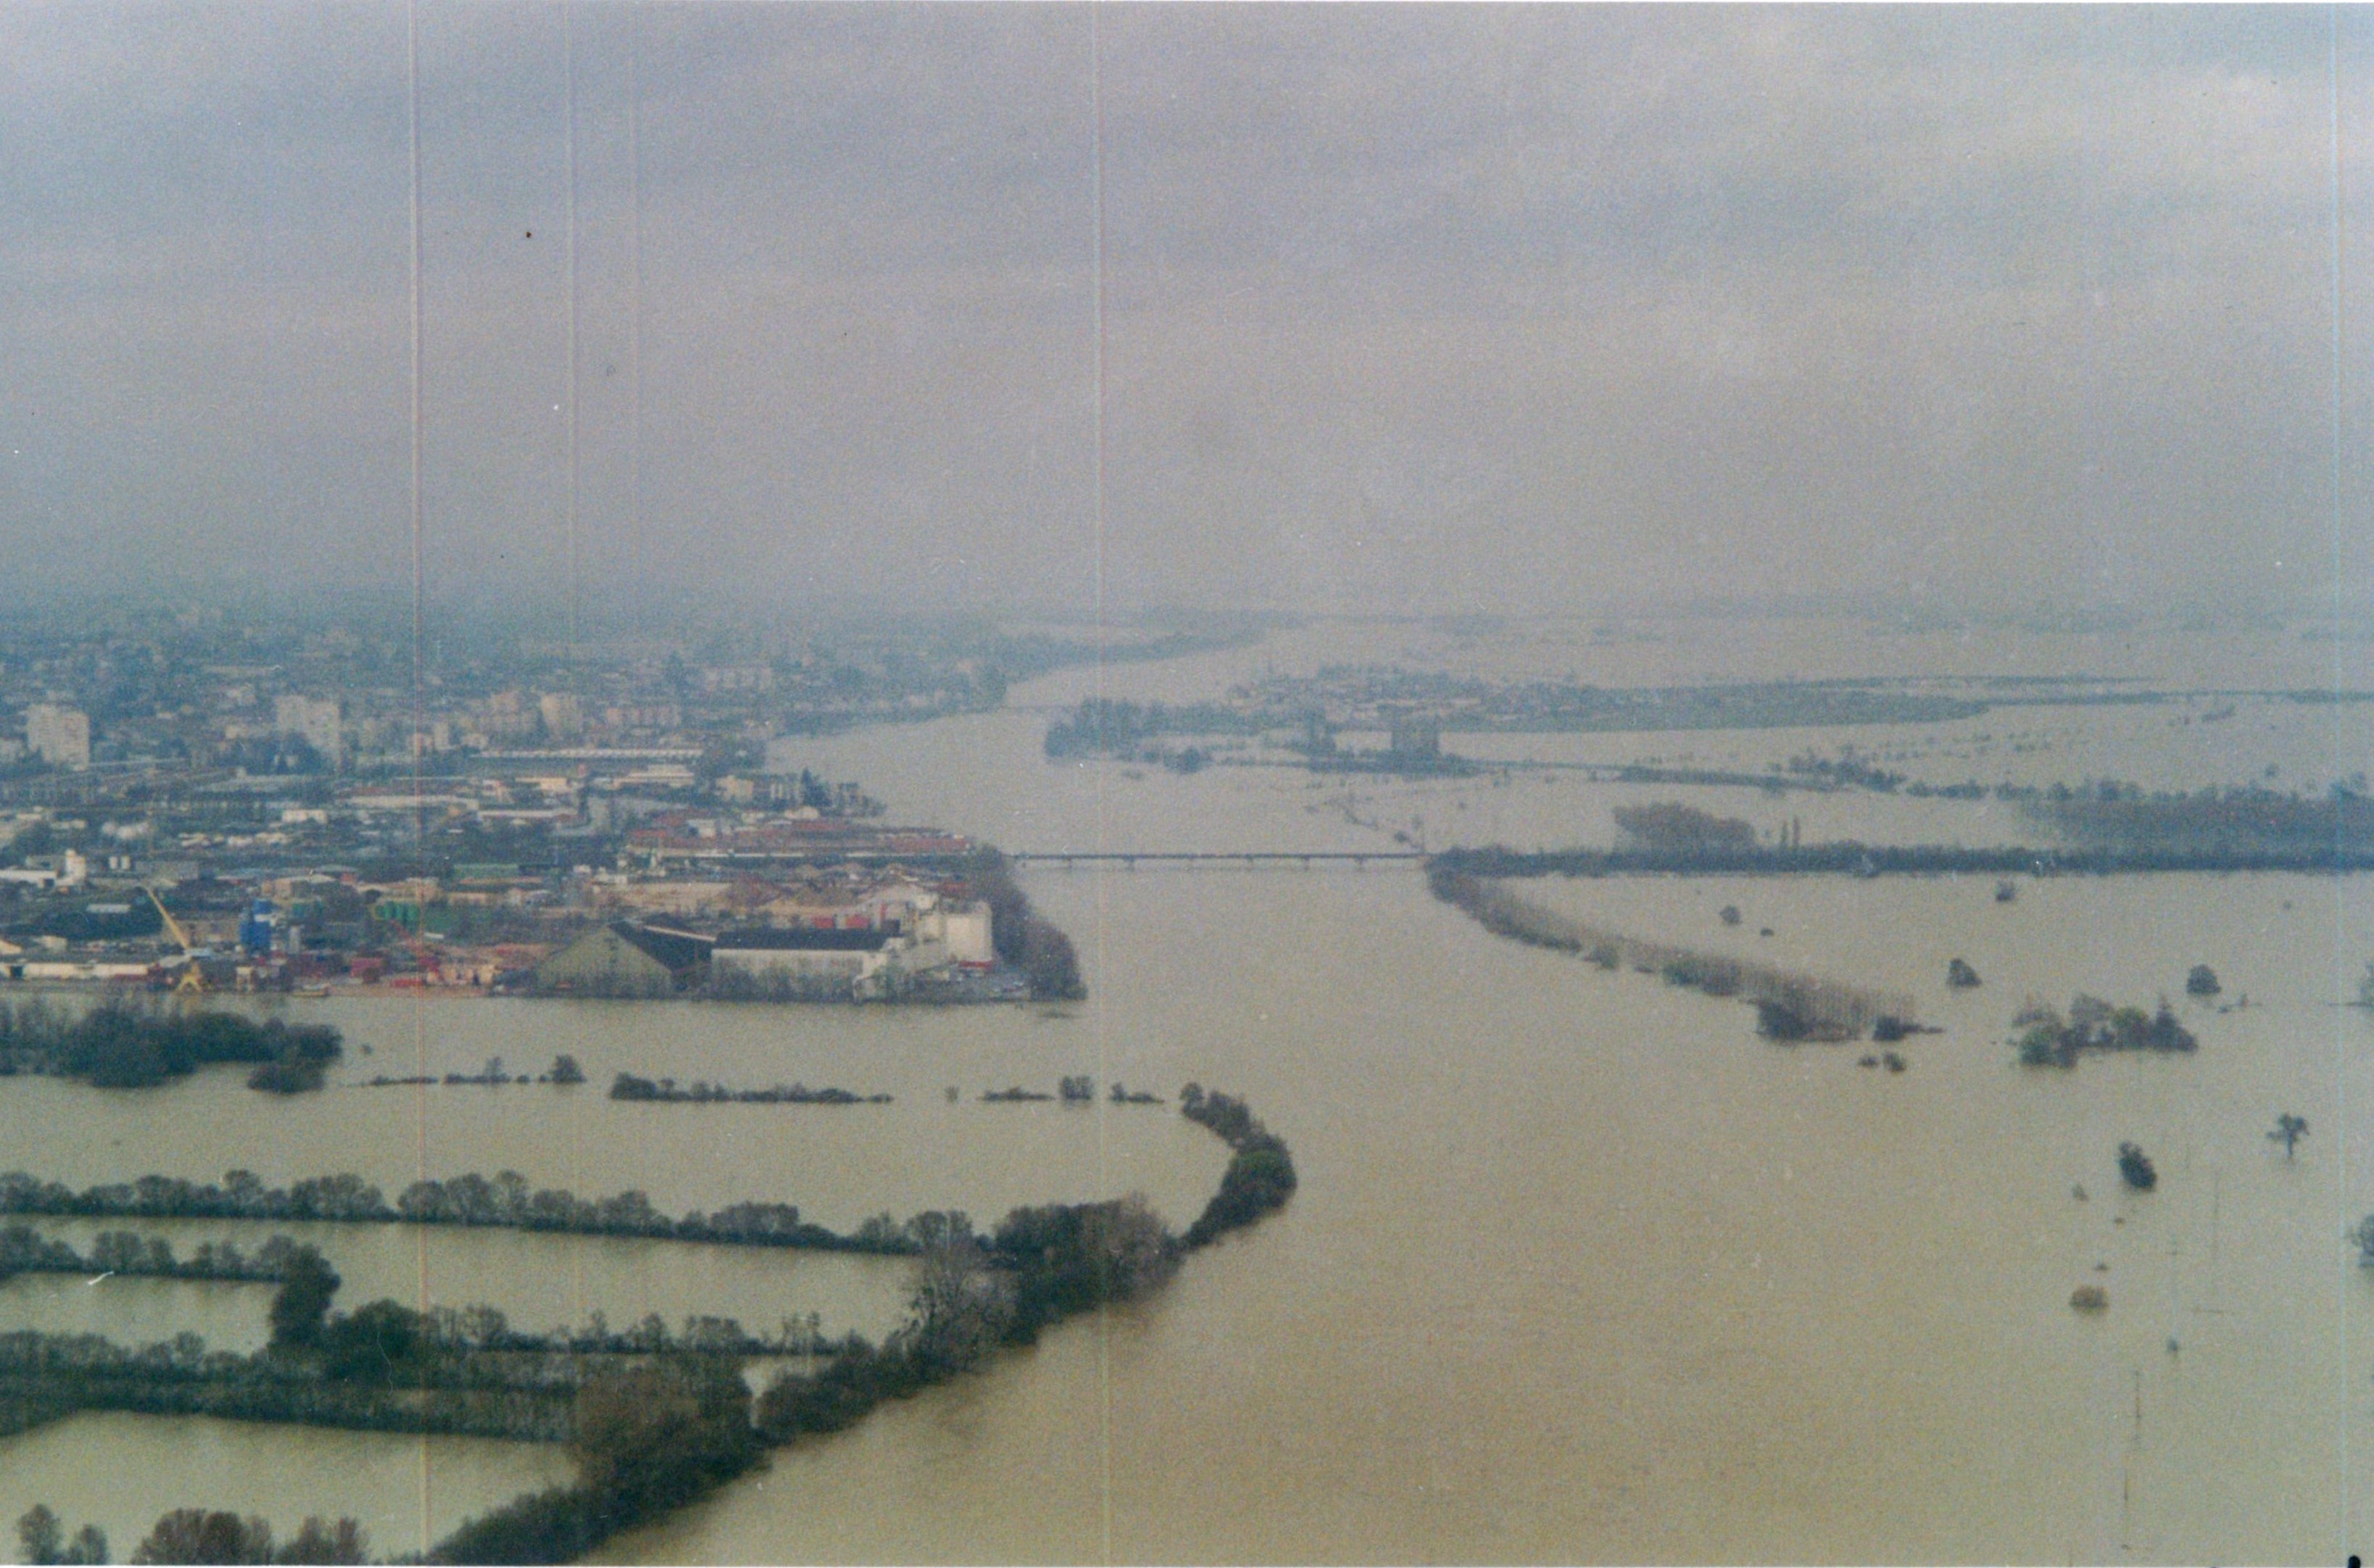 Crue de la Saône en 2001 à Varennes-lès-Mâcon